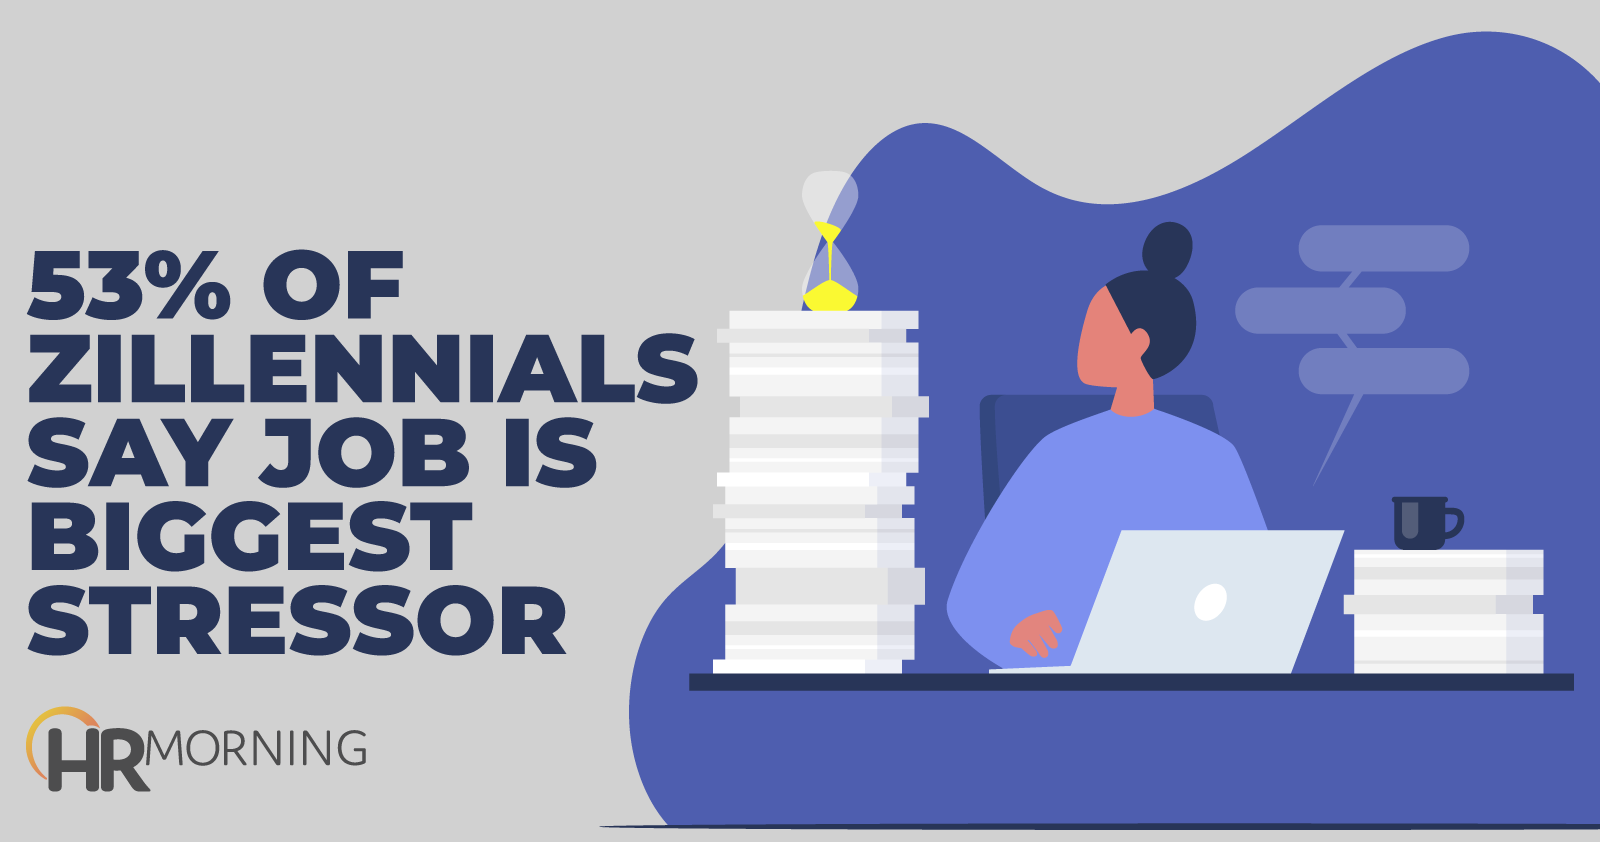 53 percent of zillennials say job is biggest stressor